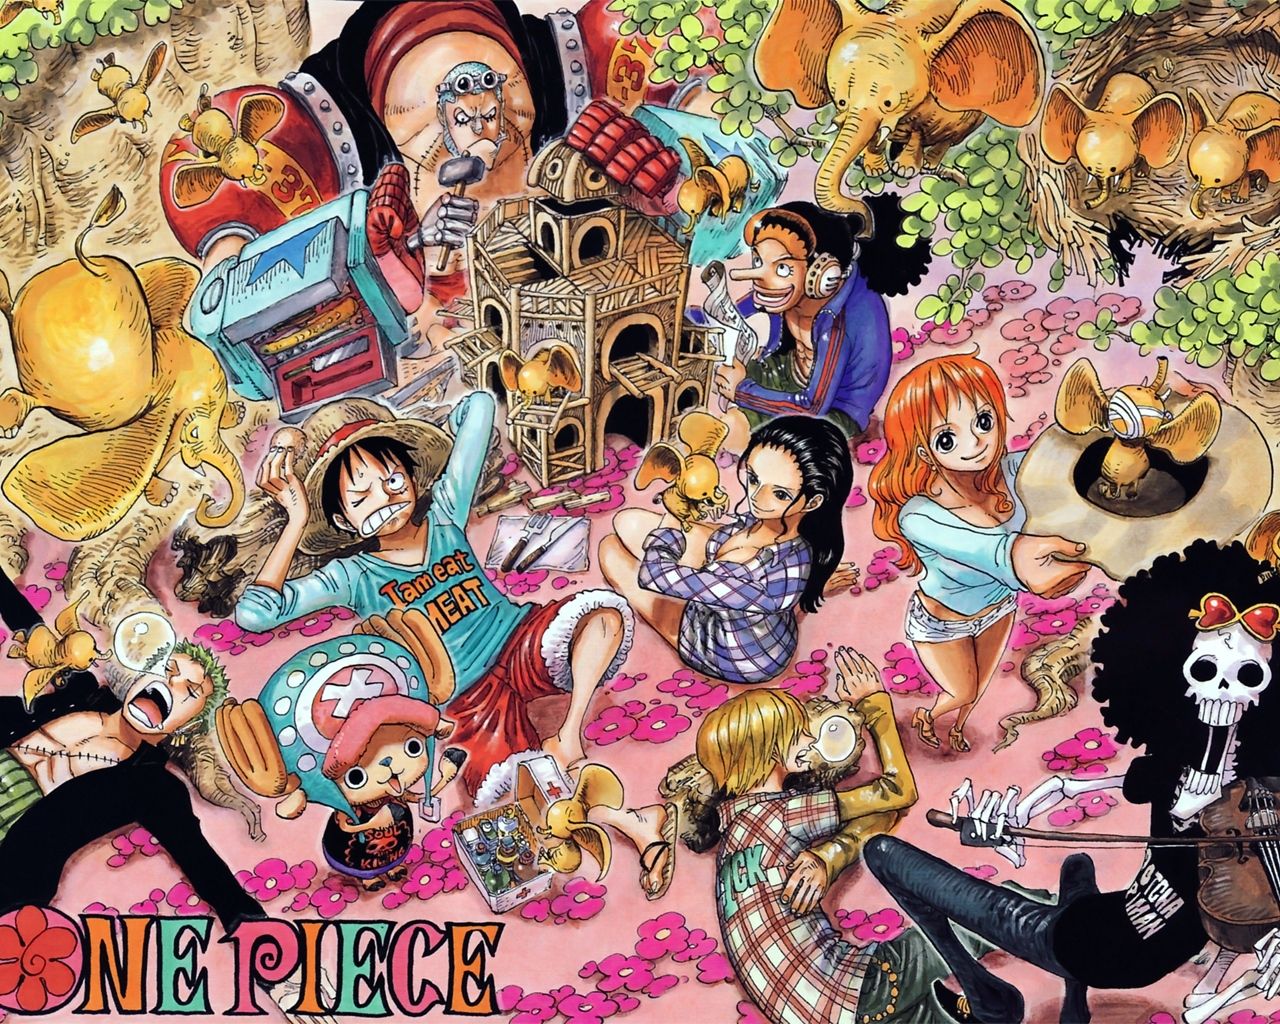 尾田栄一郎氏 One Piece 表紙カバーで横井庄一氏をネタにし炎上 故人をいじって馬鹿に 冗談でも絶対に書けない おしキャラっ 今流行りのアニメやゲームのキャラクターのオモシロ情報をまとめるサイトです